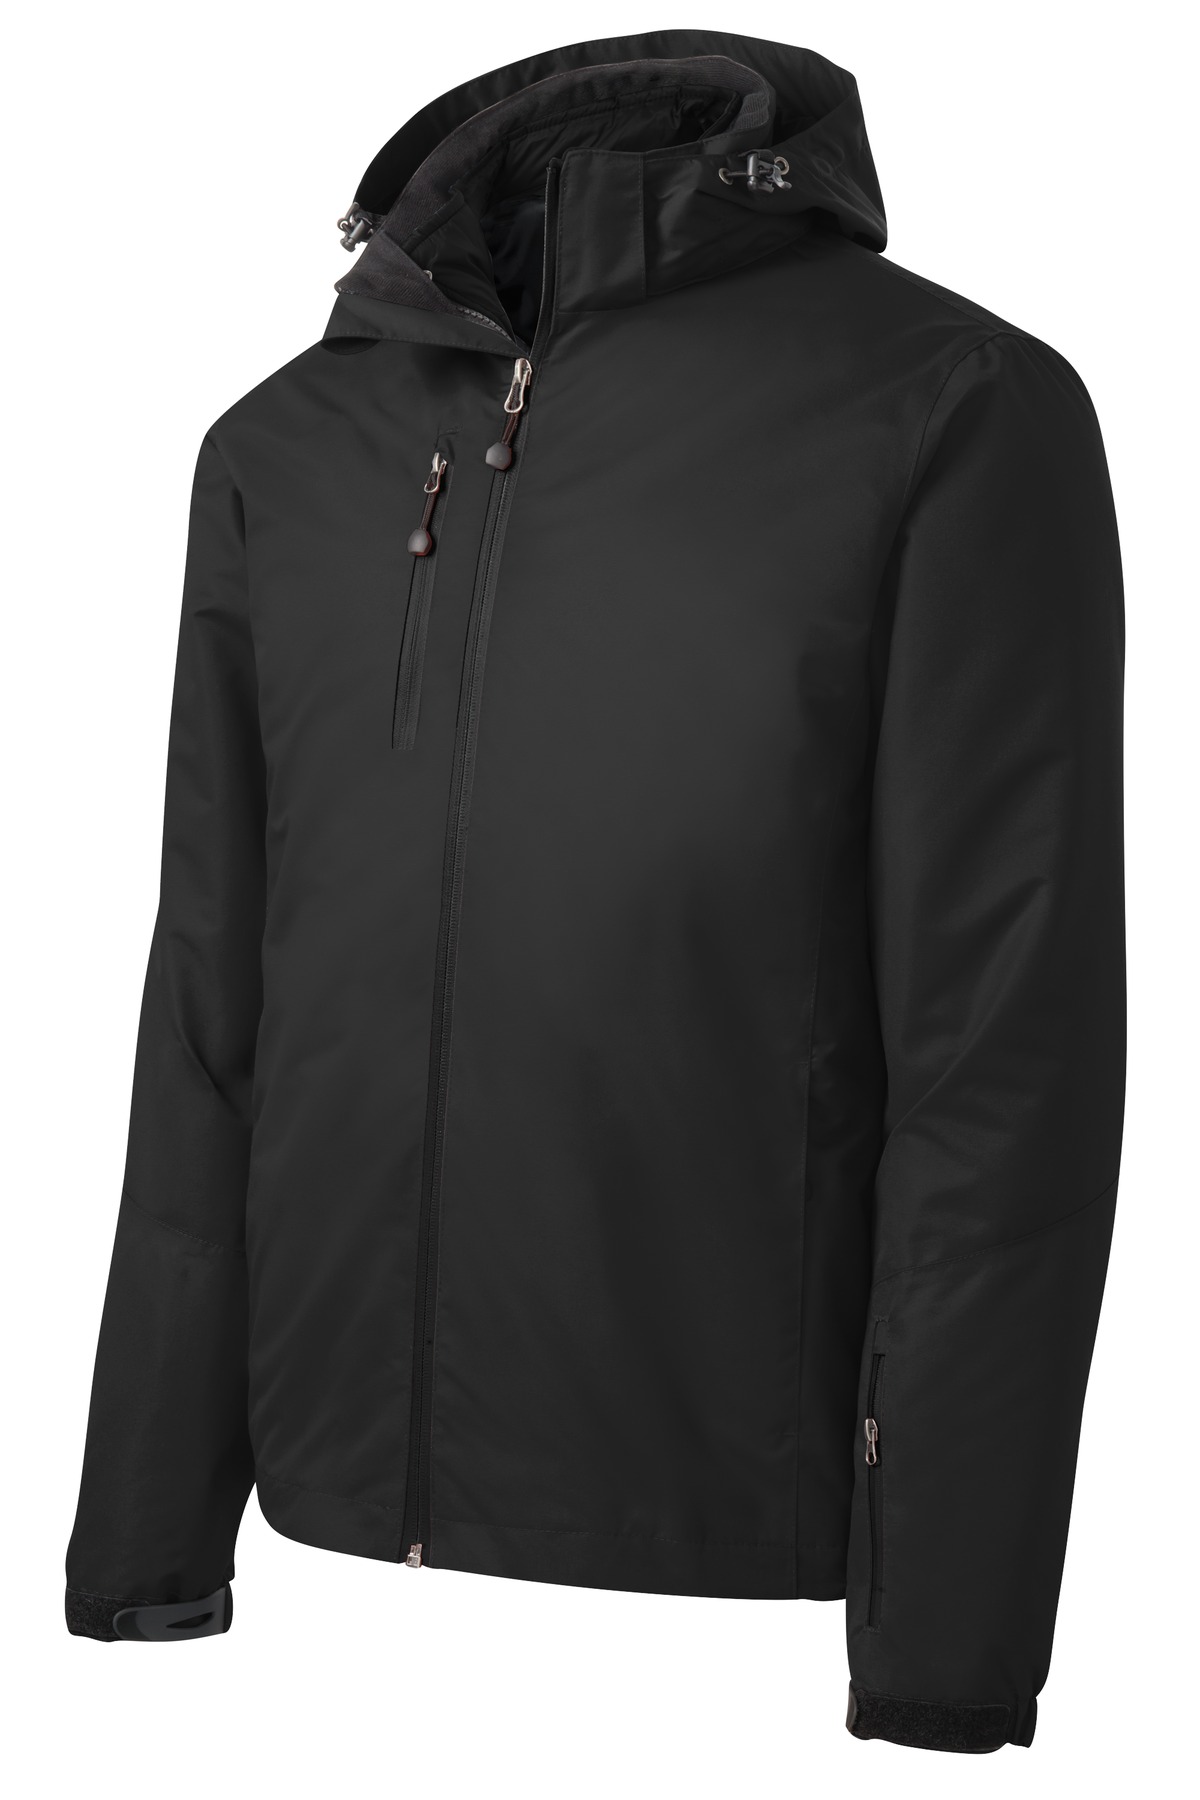 Port Authority ® Vortex Waterproof 3-in-1 Jacket. J332 - Custom Shirt Shop